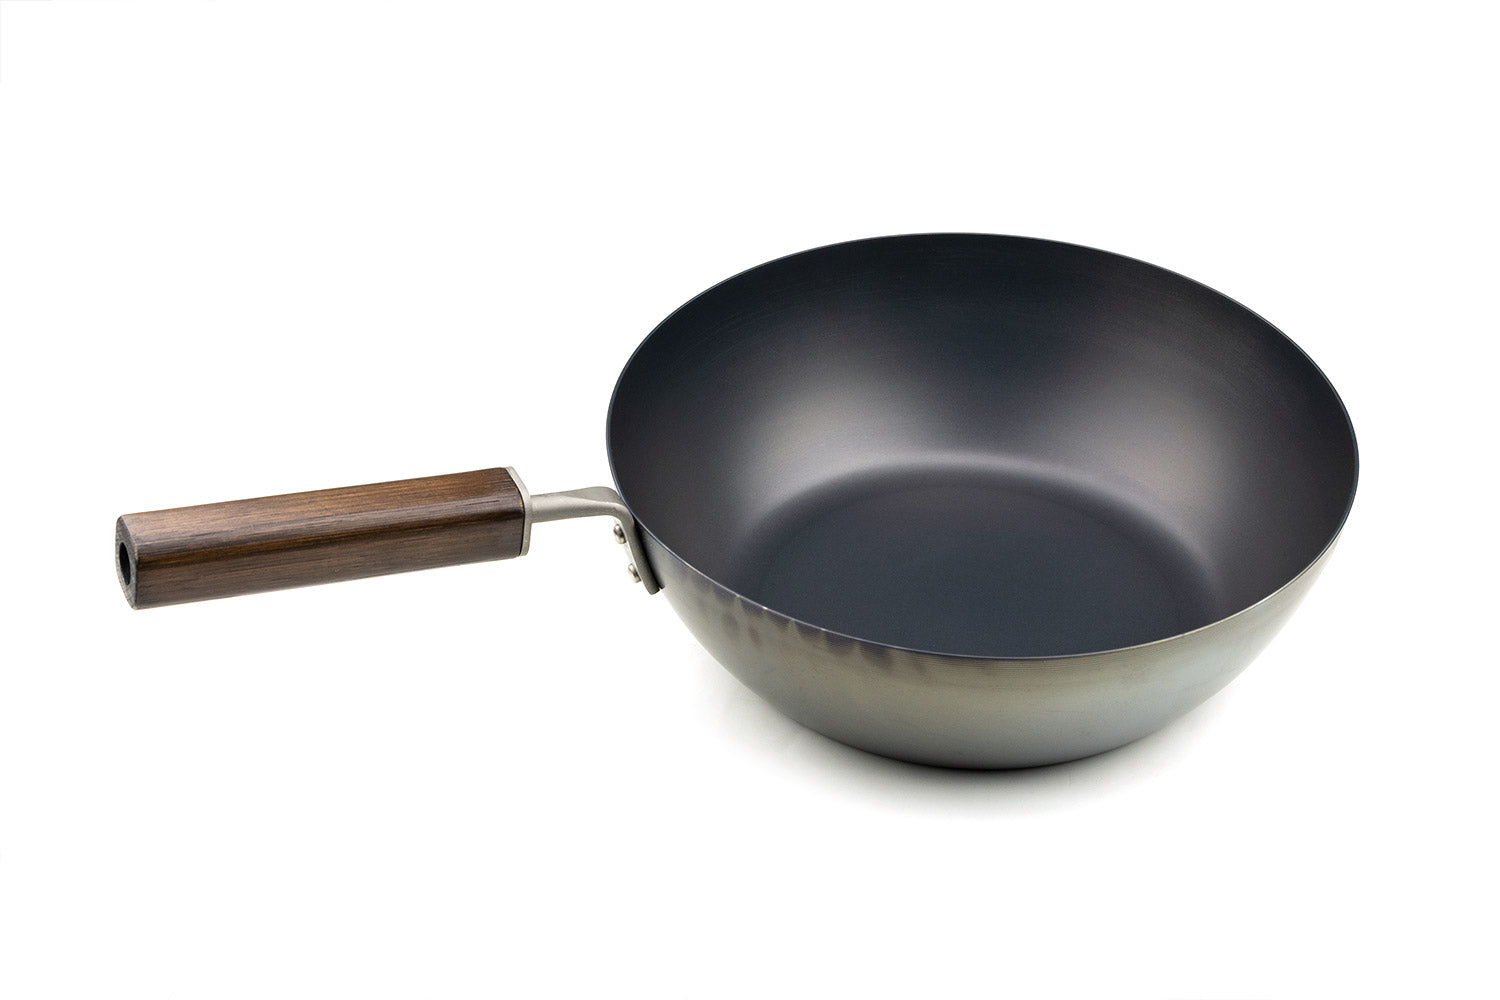 Kockums Jernverk Frying Pan 24 cm - Frying Pans Carbon Steel Black - STEK24-080